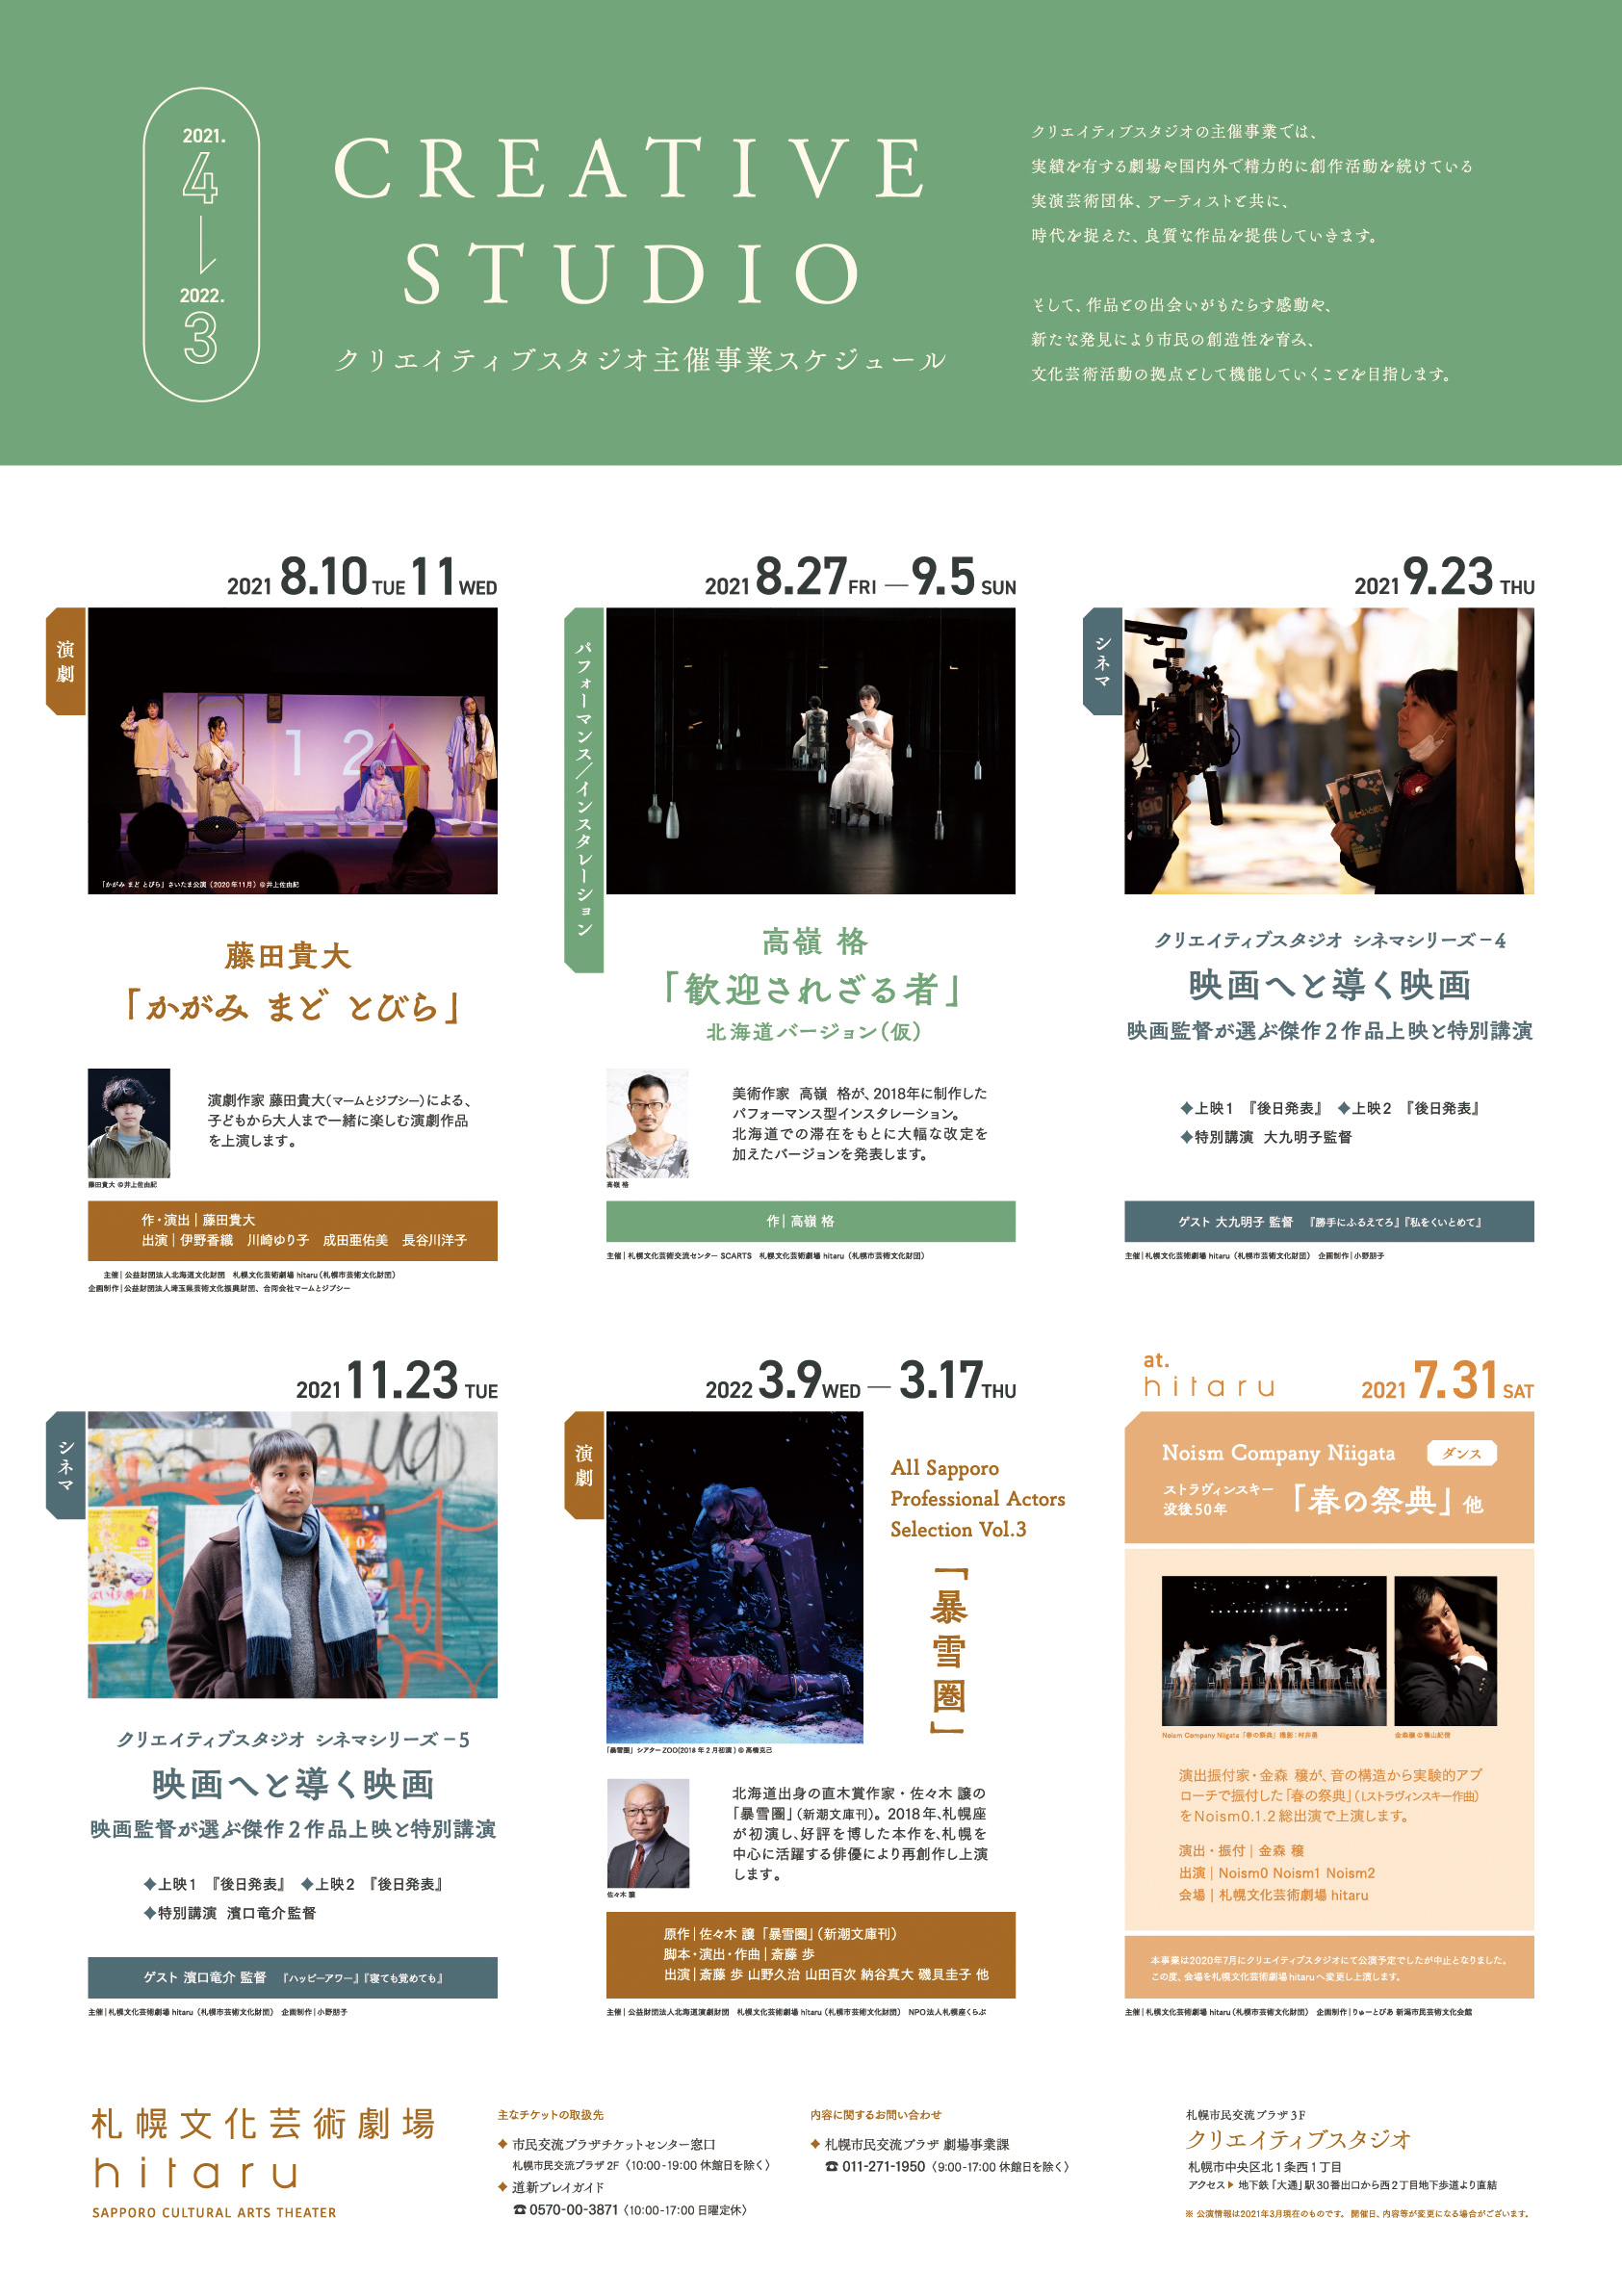 クリエイティブスタジオ2021 / 2022 主催事業スケジュールイメージ